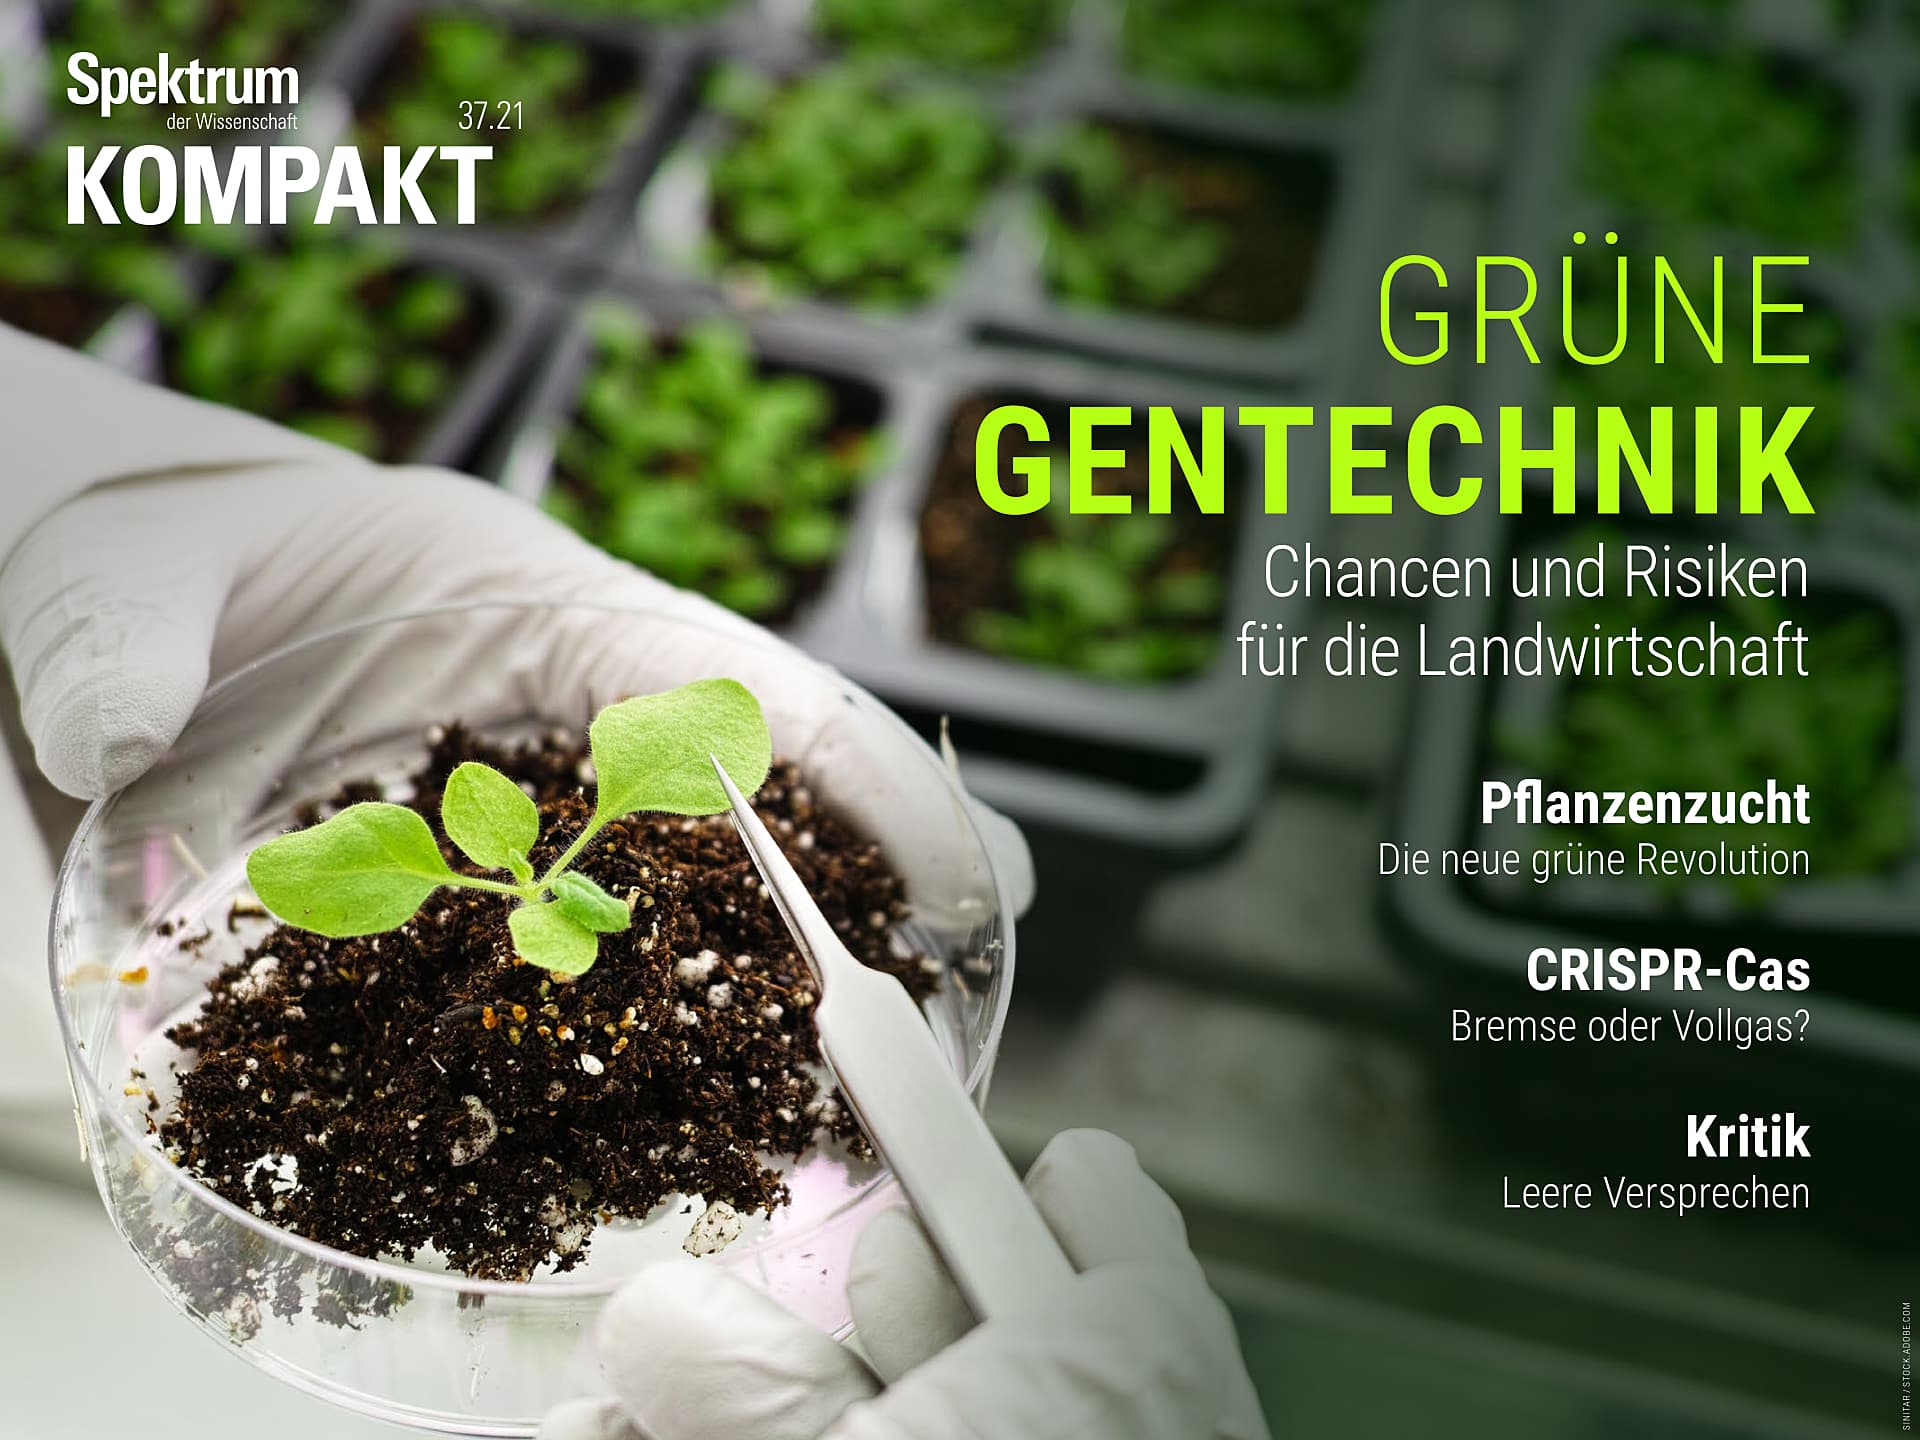 Grüne Gentechnik - Chancen und Risiken für die Landwirtschaft